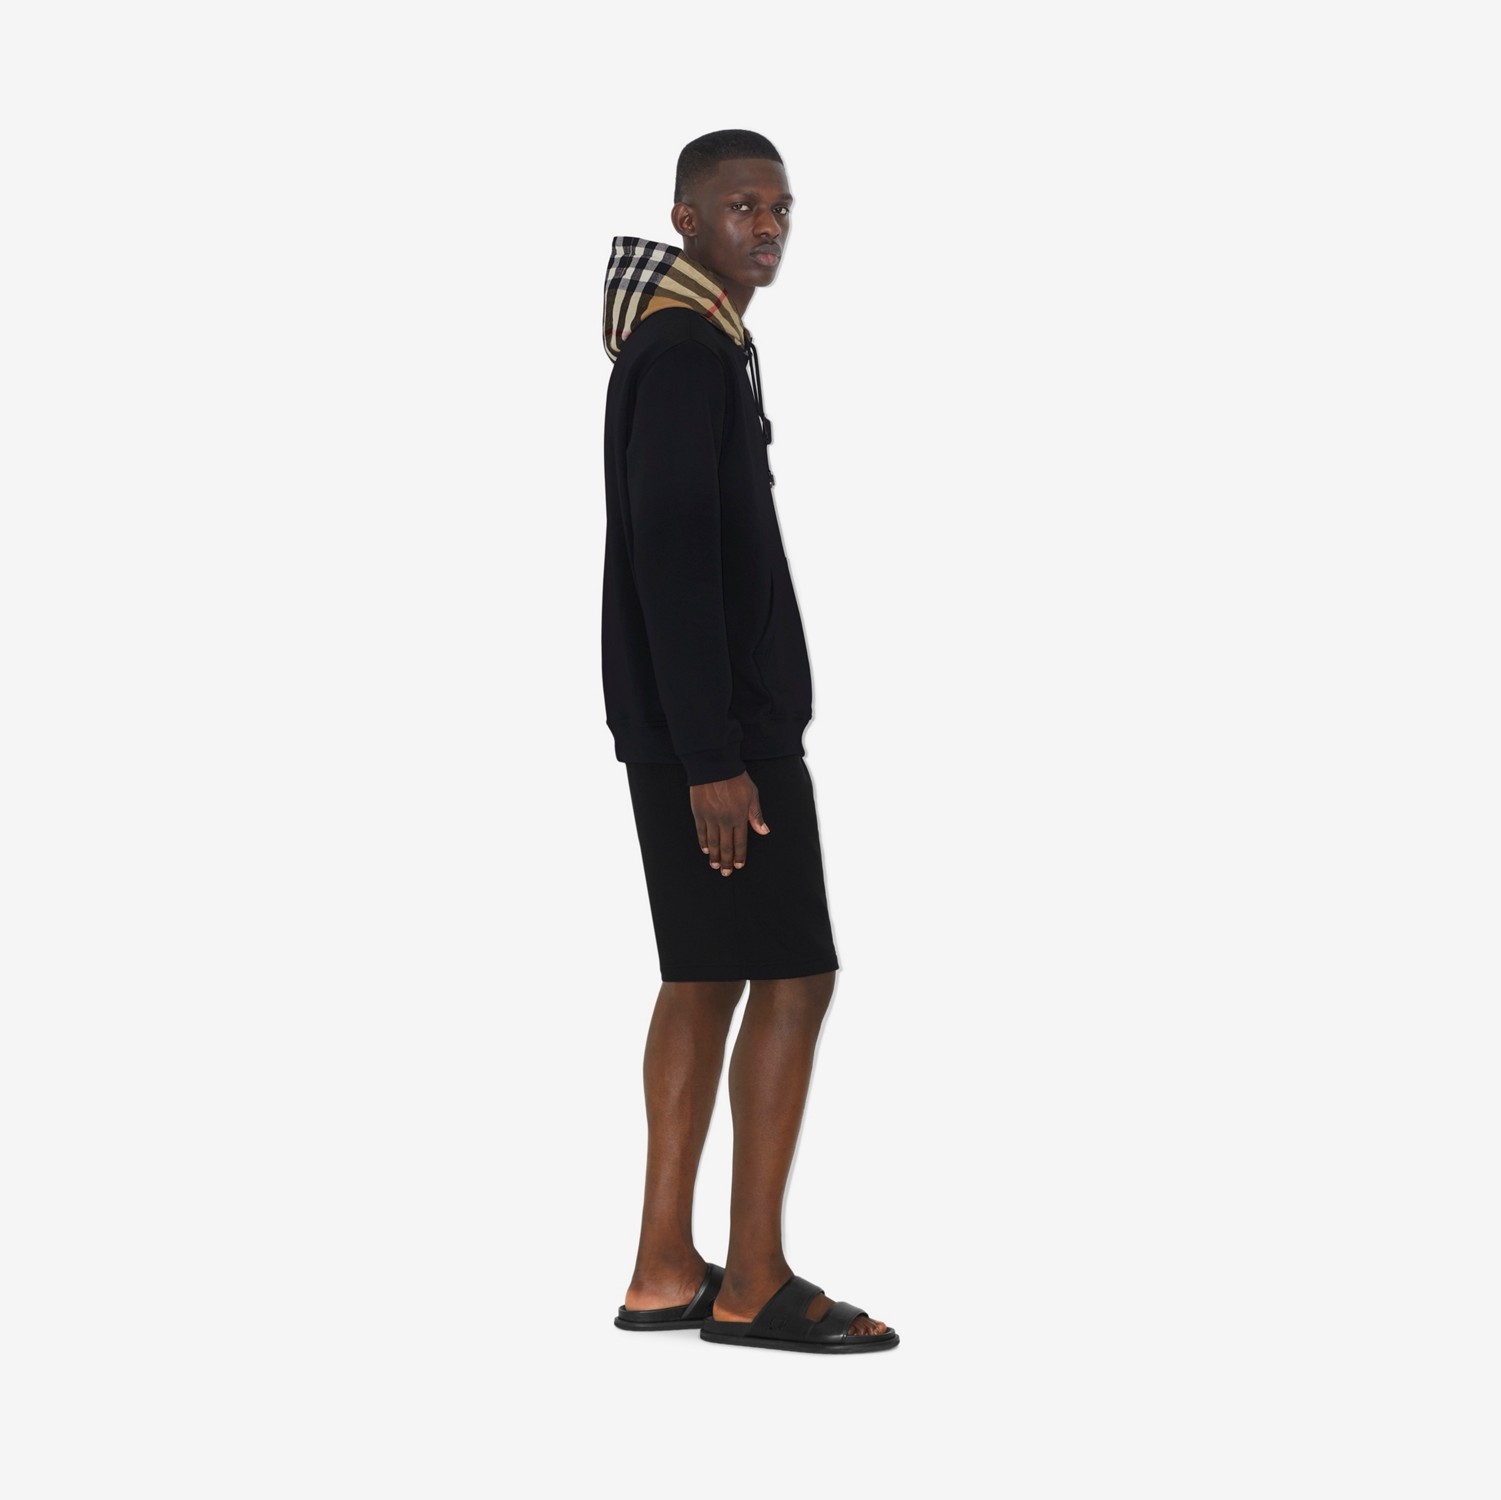 Sudadera en algodón con capucha y detalles Check (Negro) - Hombre | Burberry® oficial